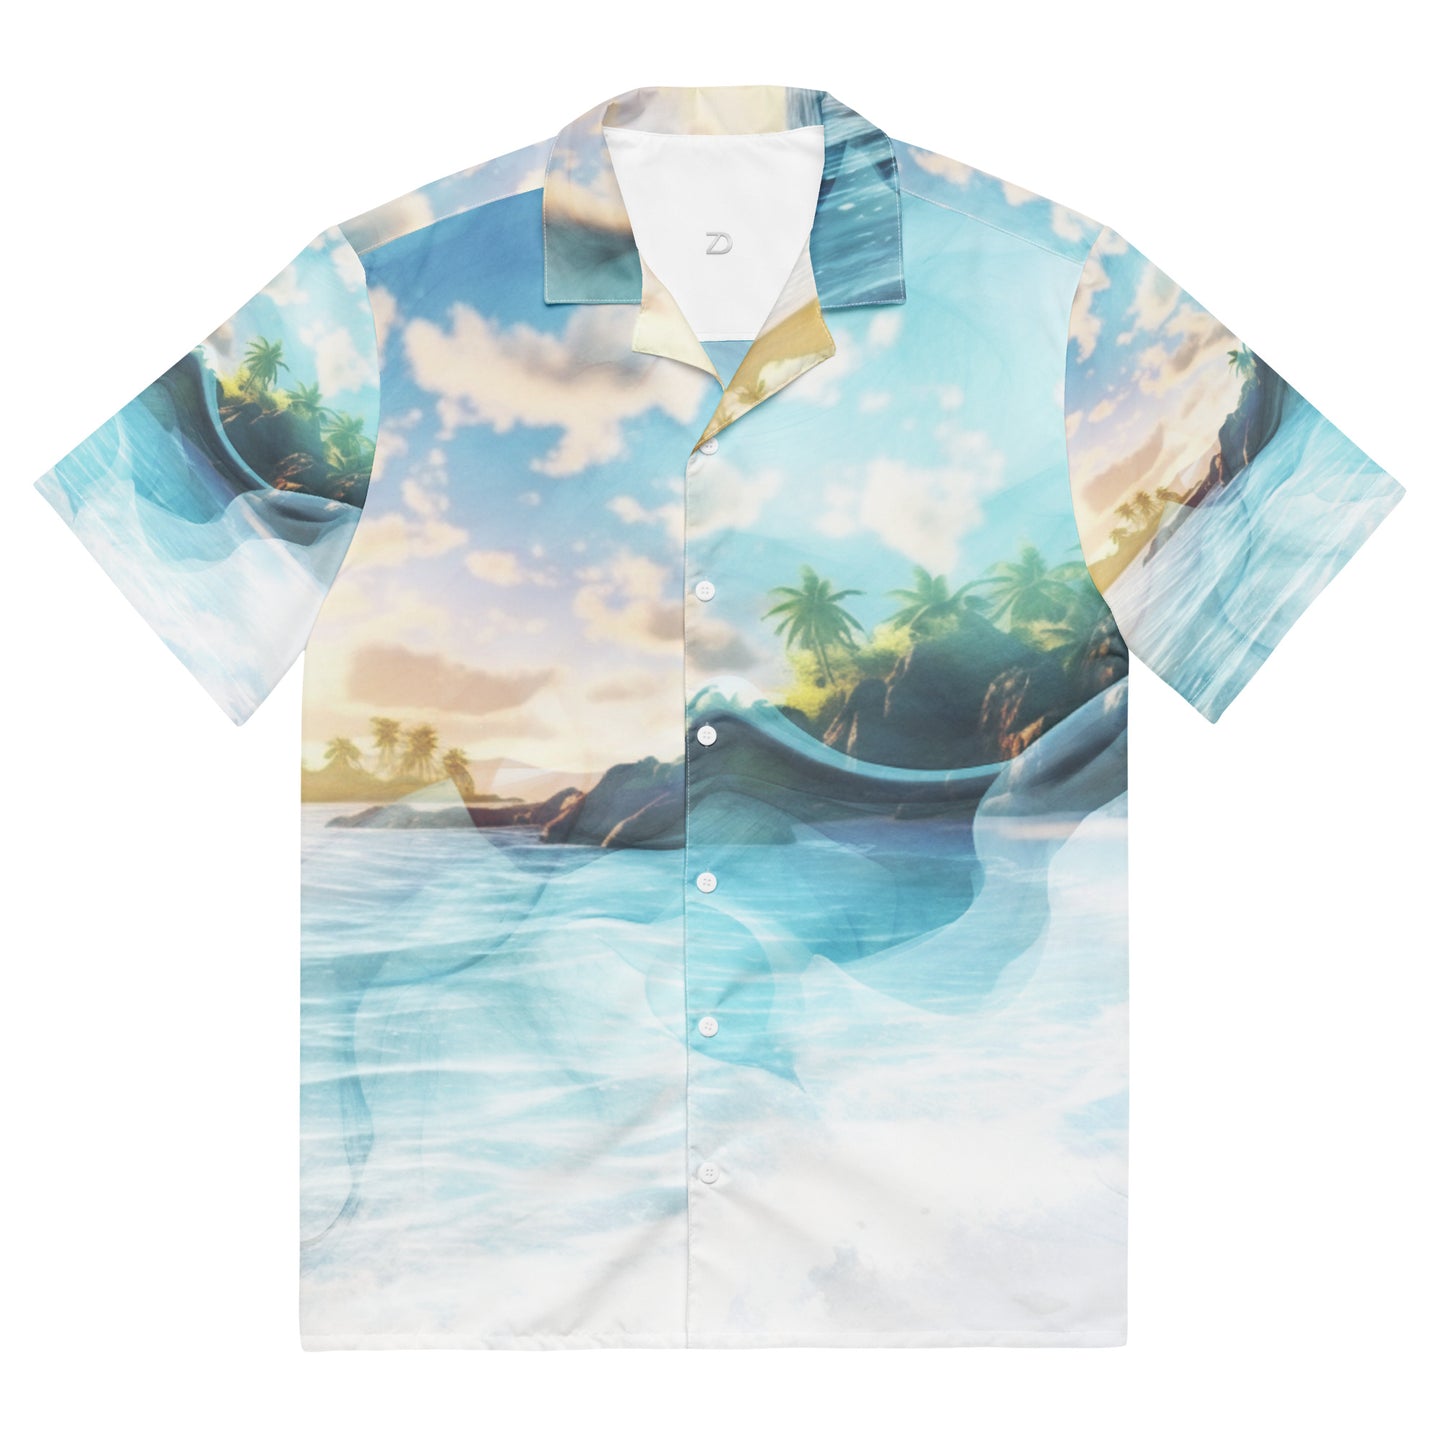 Vivid Dreams Tropical Beach Unisex Button Shirt - Dreamscape Collection by Neduz Designs